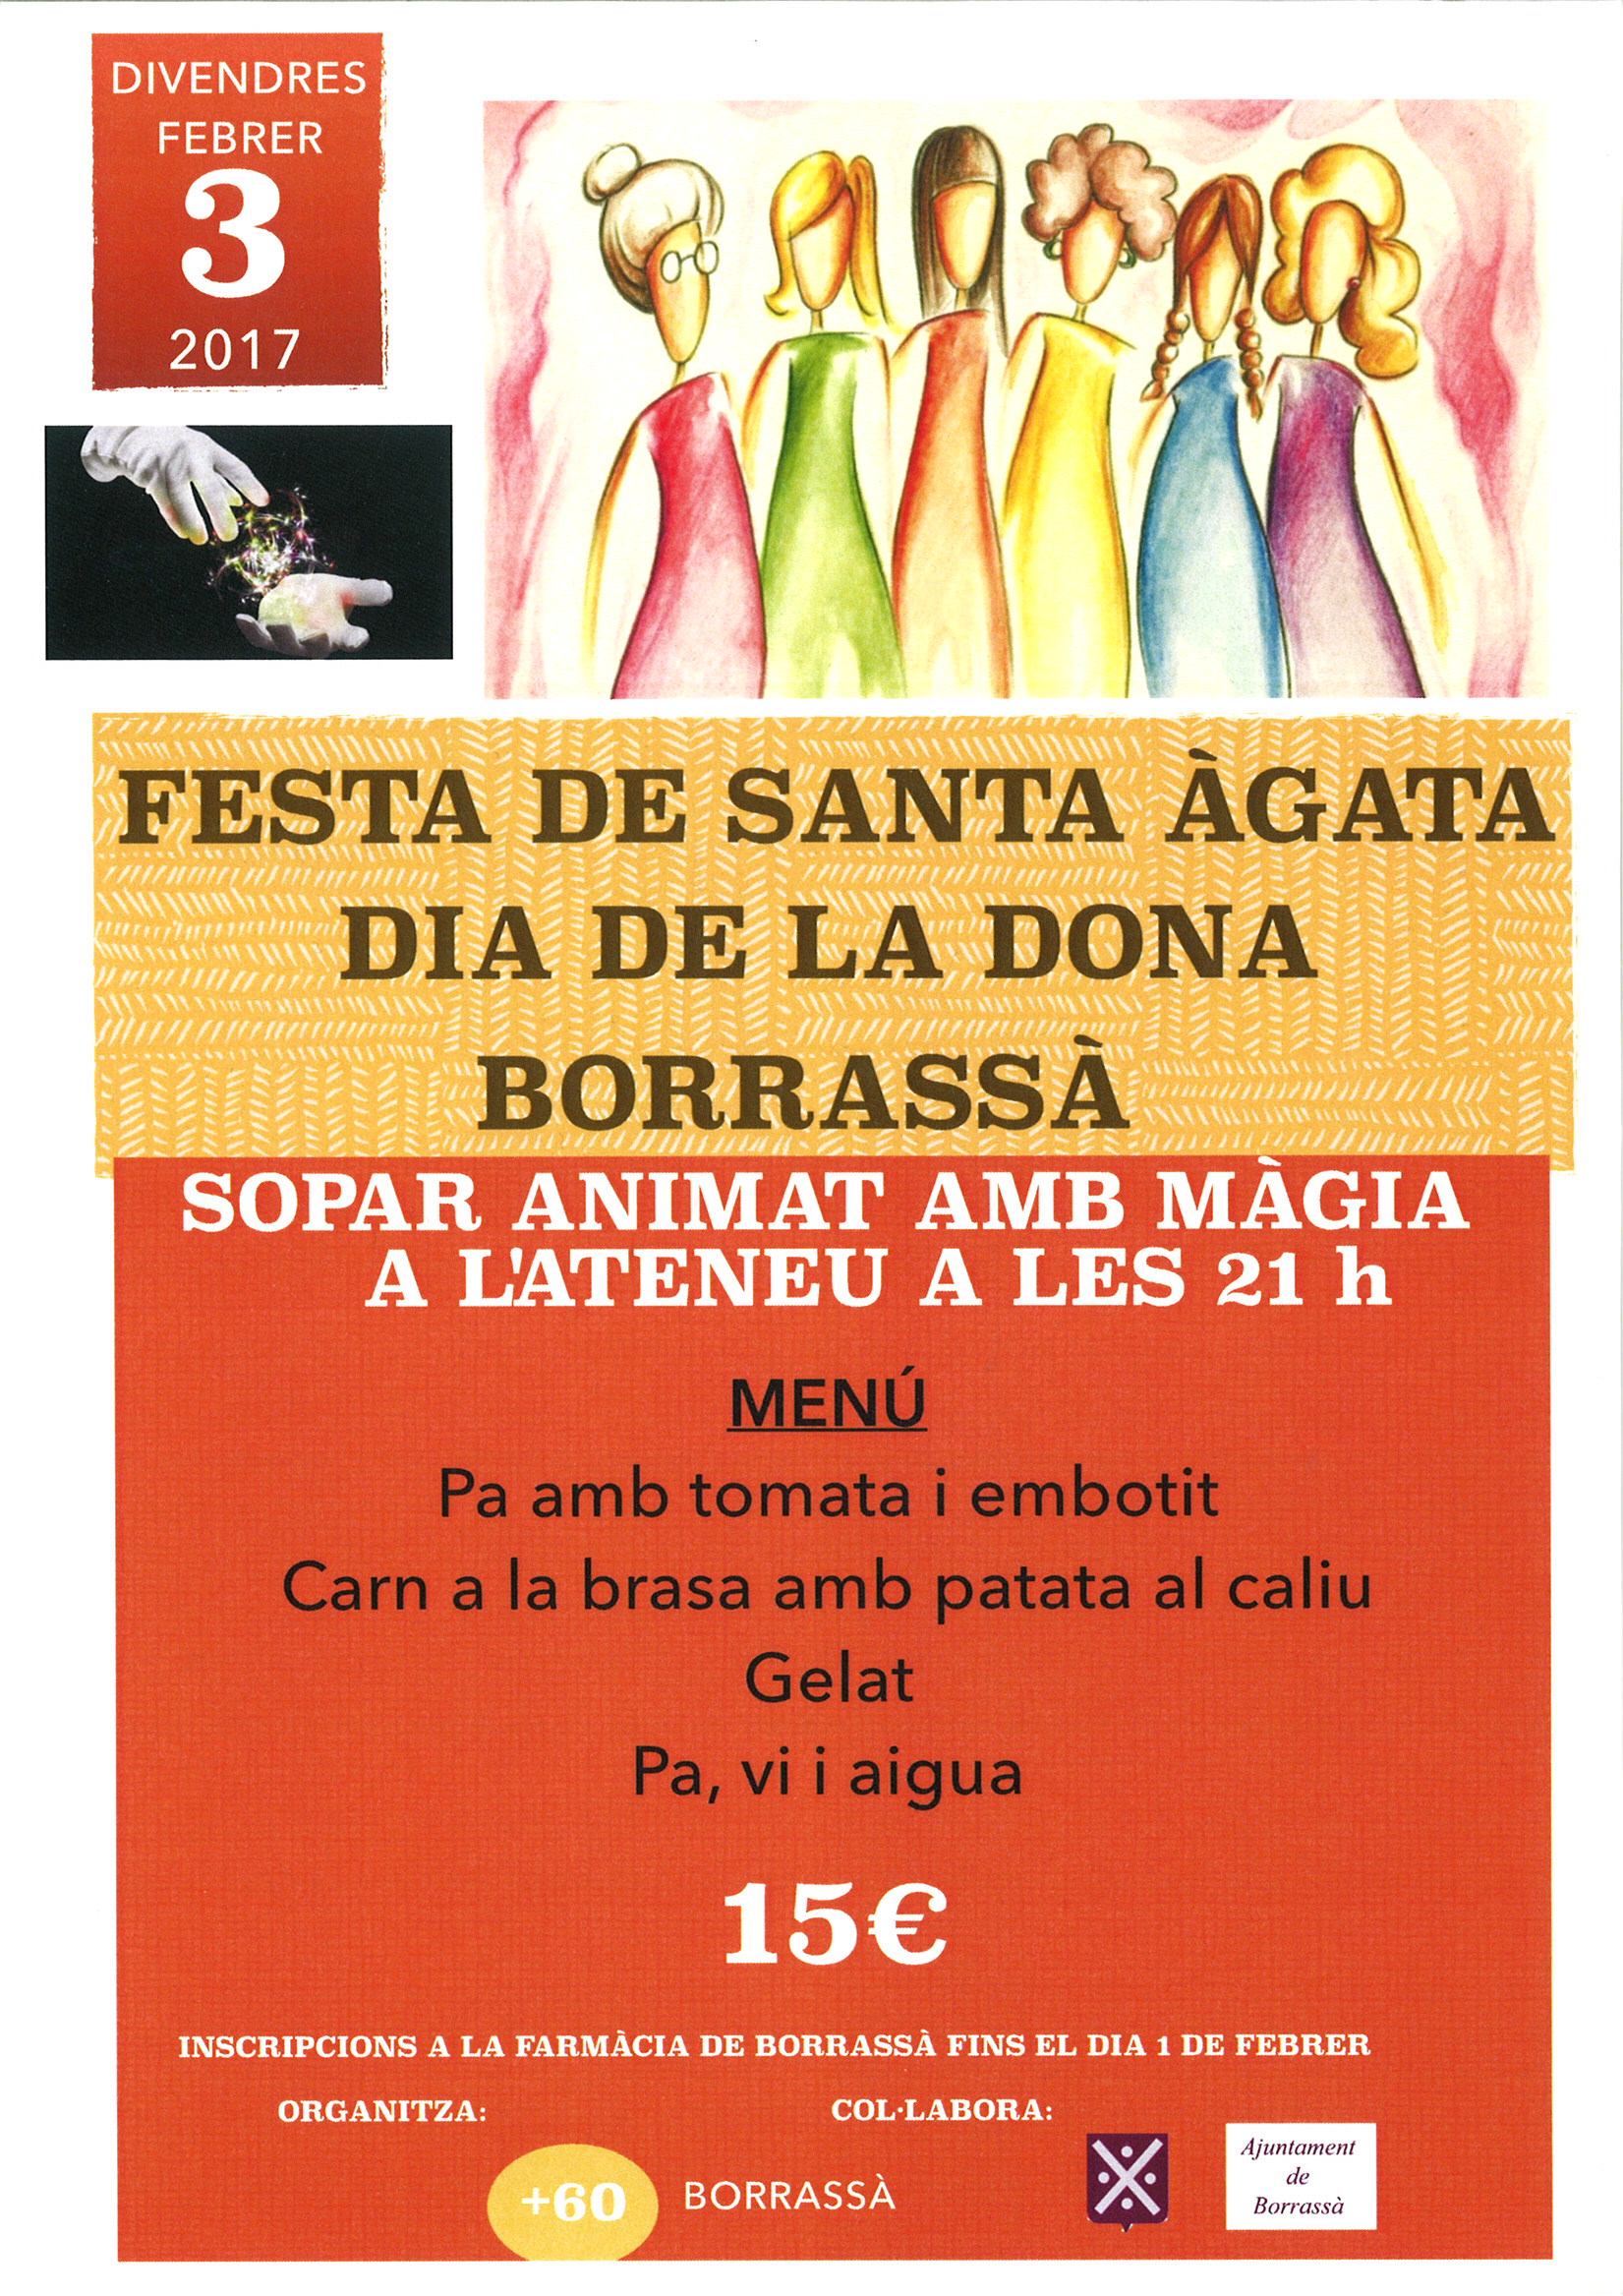 Aquest divendres 3 de febrer, a Borrassà celebra la festa de Santa Àgata amb un sopar a l'Ateneu, coincidint amb el Dia de la Dona. L'organitza el col·lectiu + 60 amb la col·laboració de l'Ajuntament de Borrassà. Inscripcions obertes fins aquest dimecres 1 de febrer, a la farmàcia del poble.